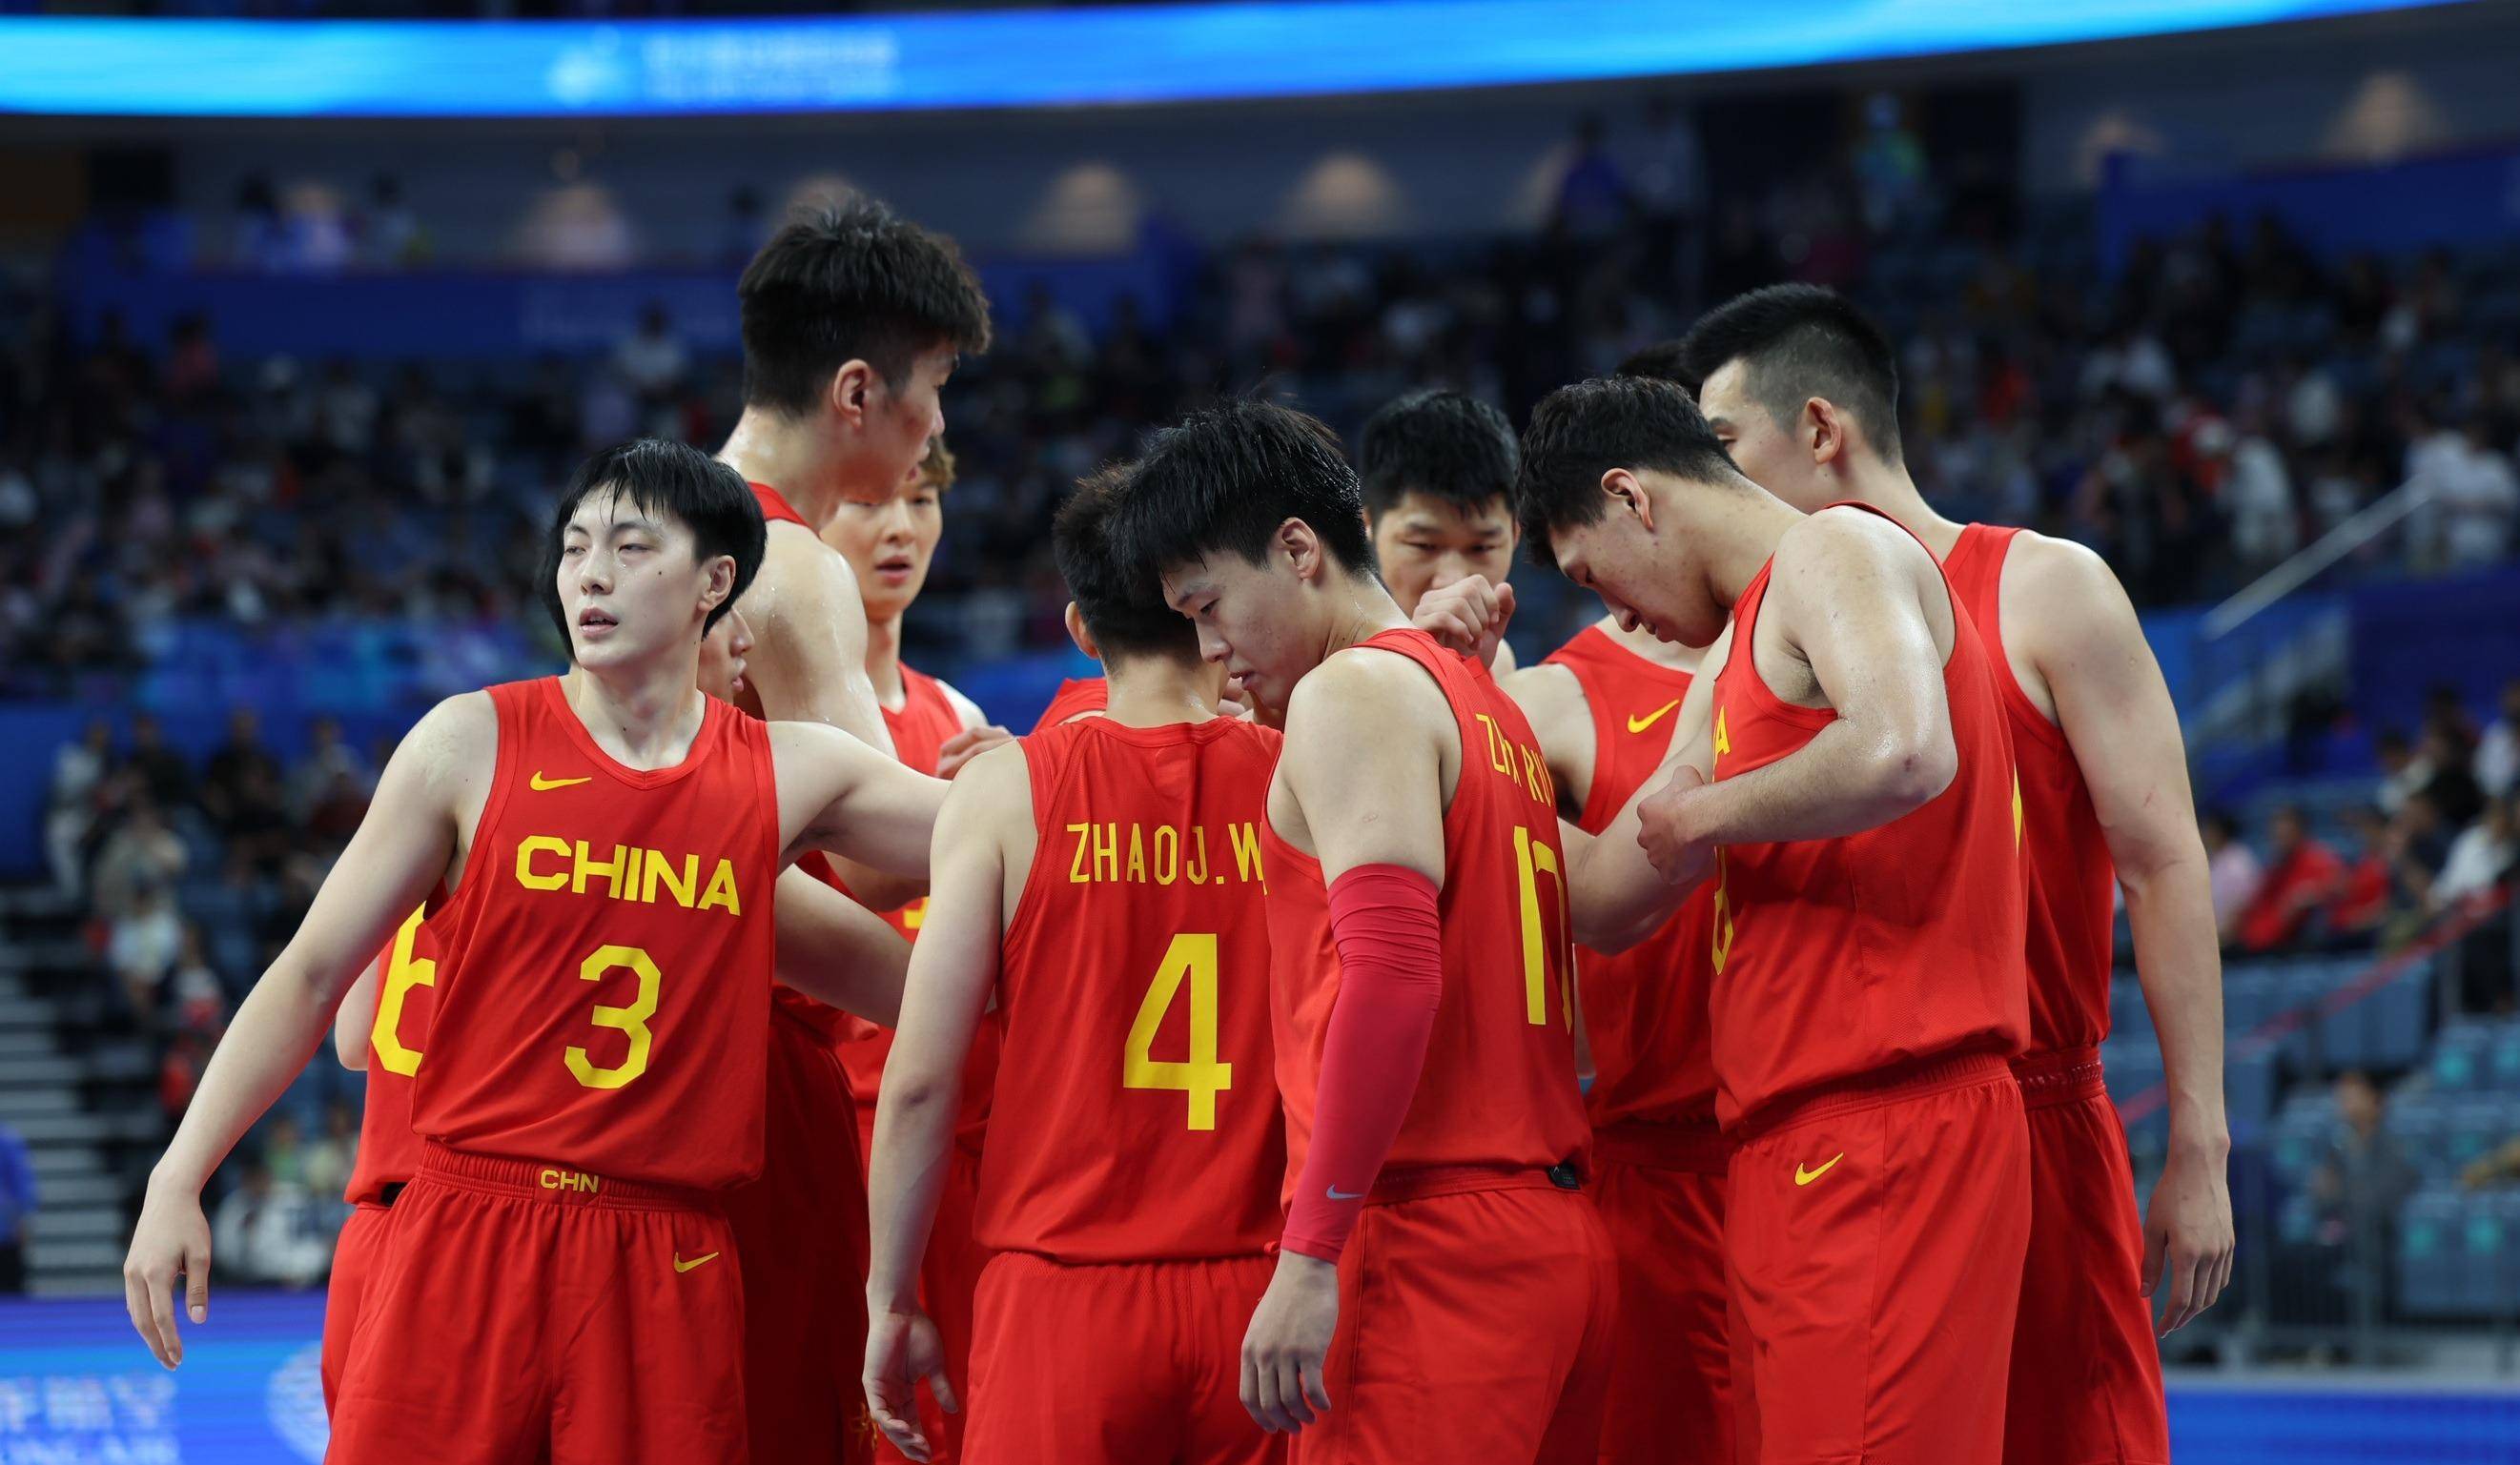 严重被低估!中国男篮在亚洲仅排名第七,日本第二